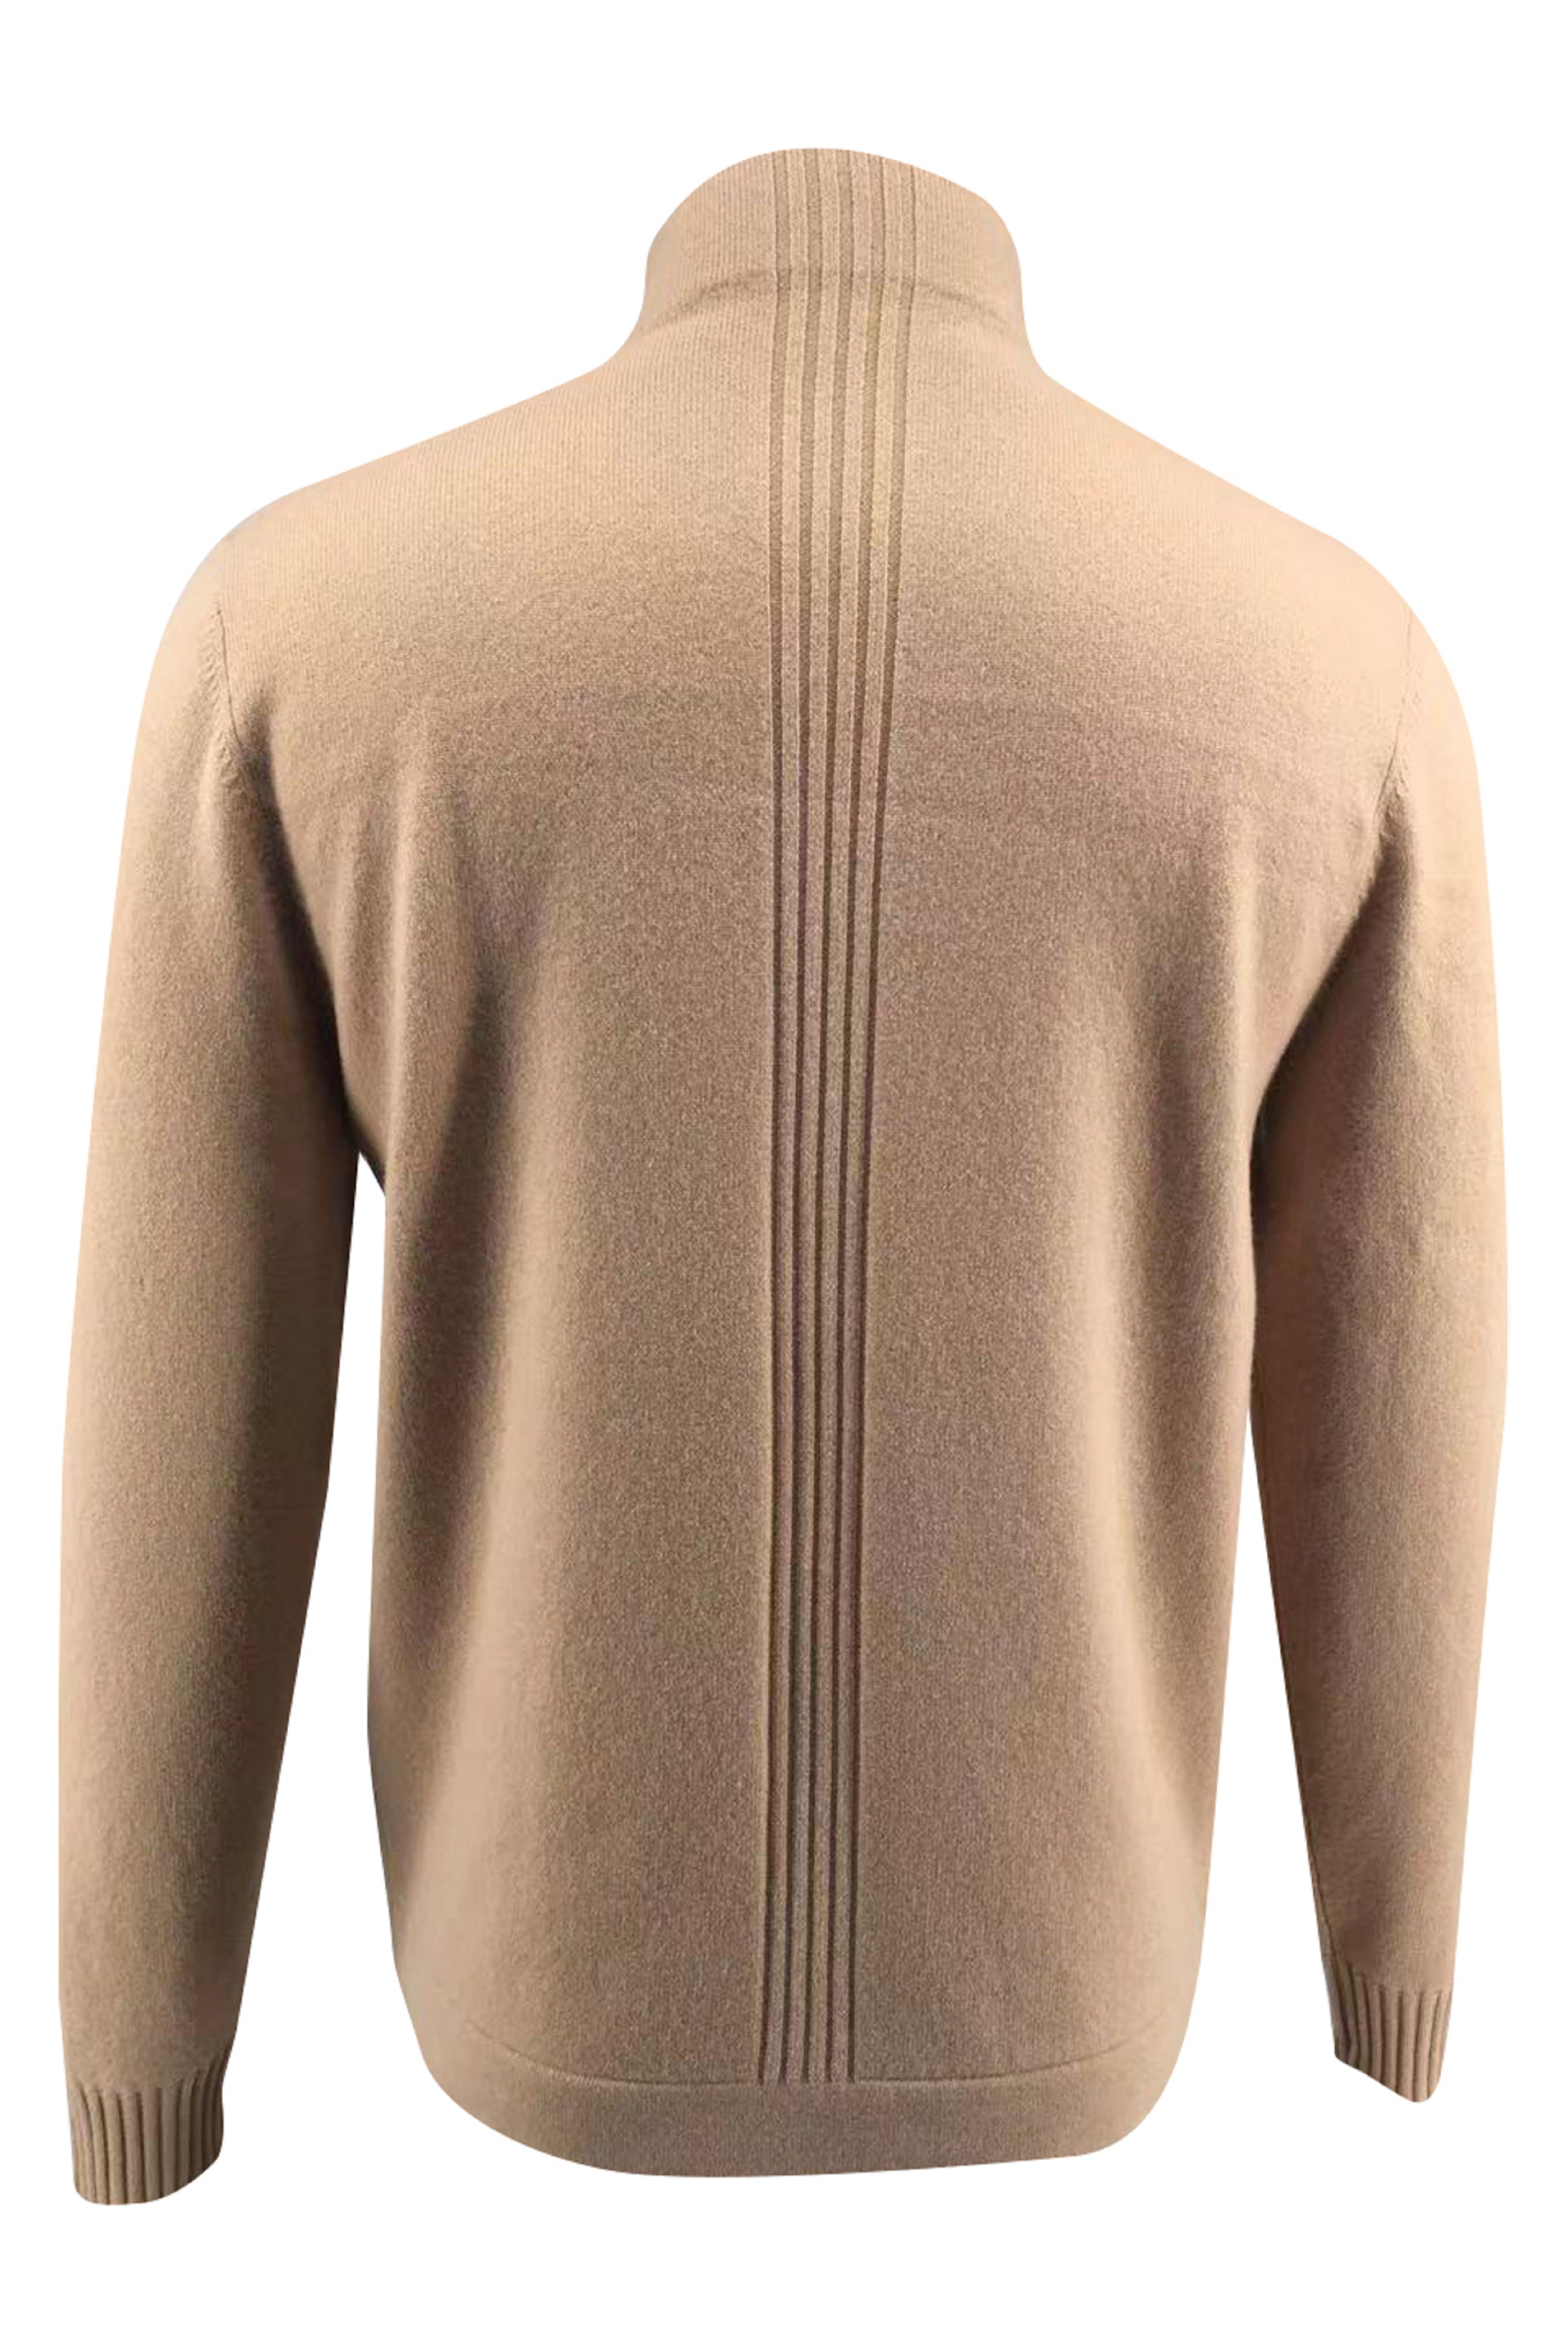 men-s-merino-half-zip-pullover